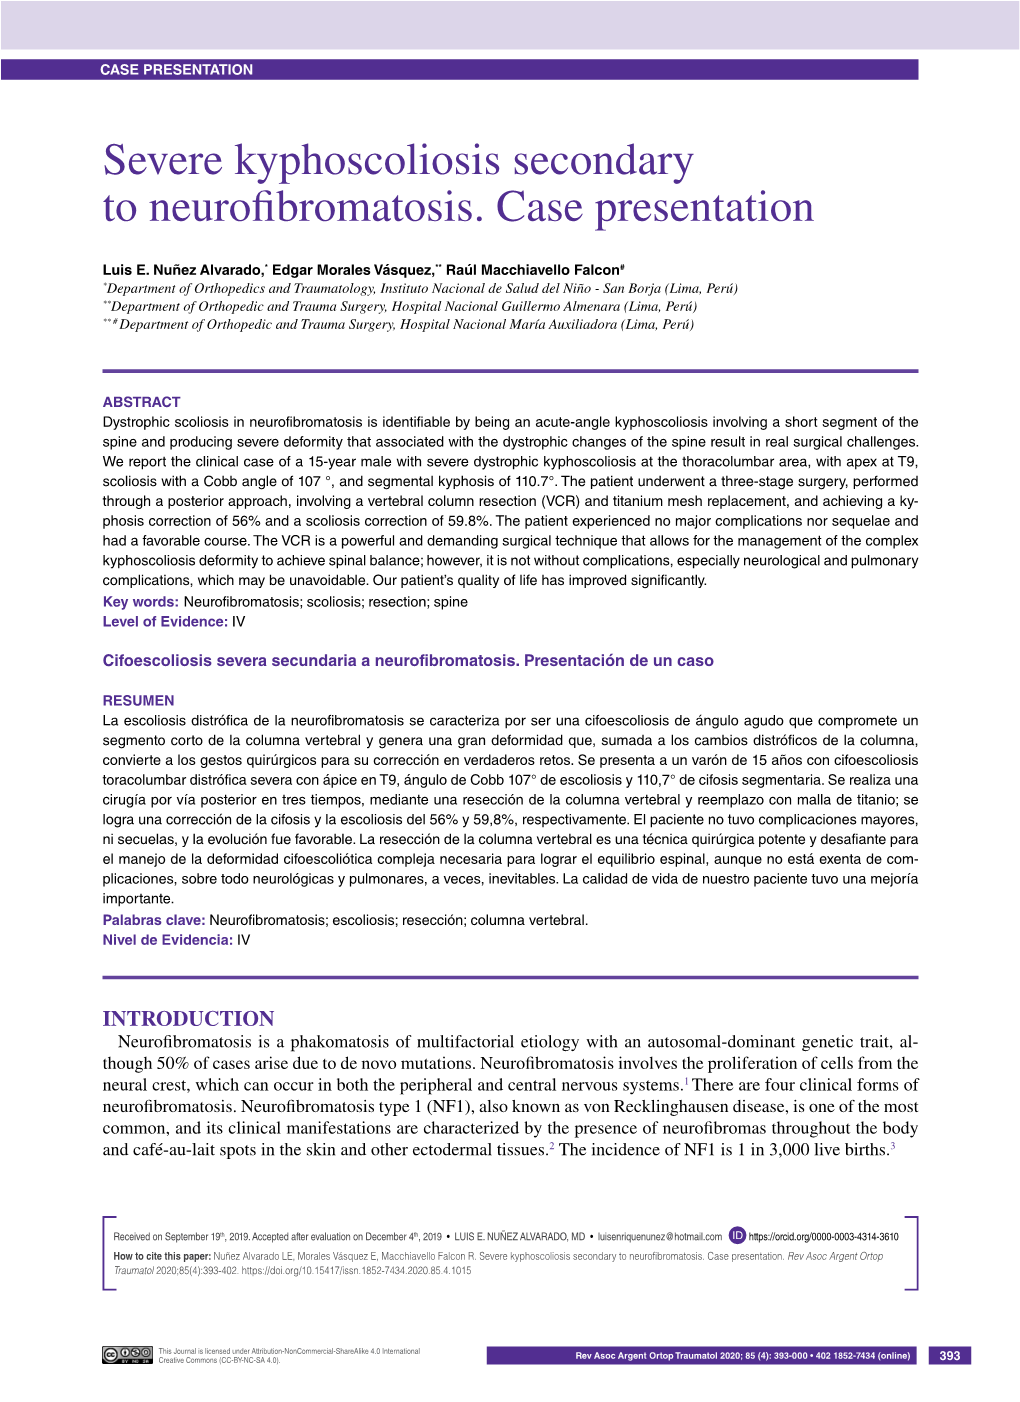 Severe Kyphoscoliosis Secondary to Neurofibromatosis. Case Presentation